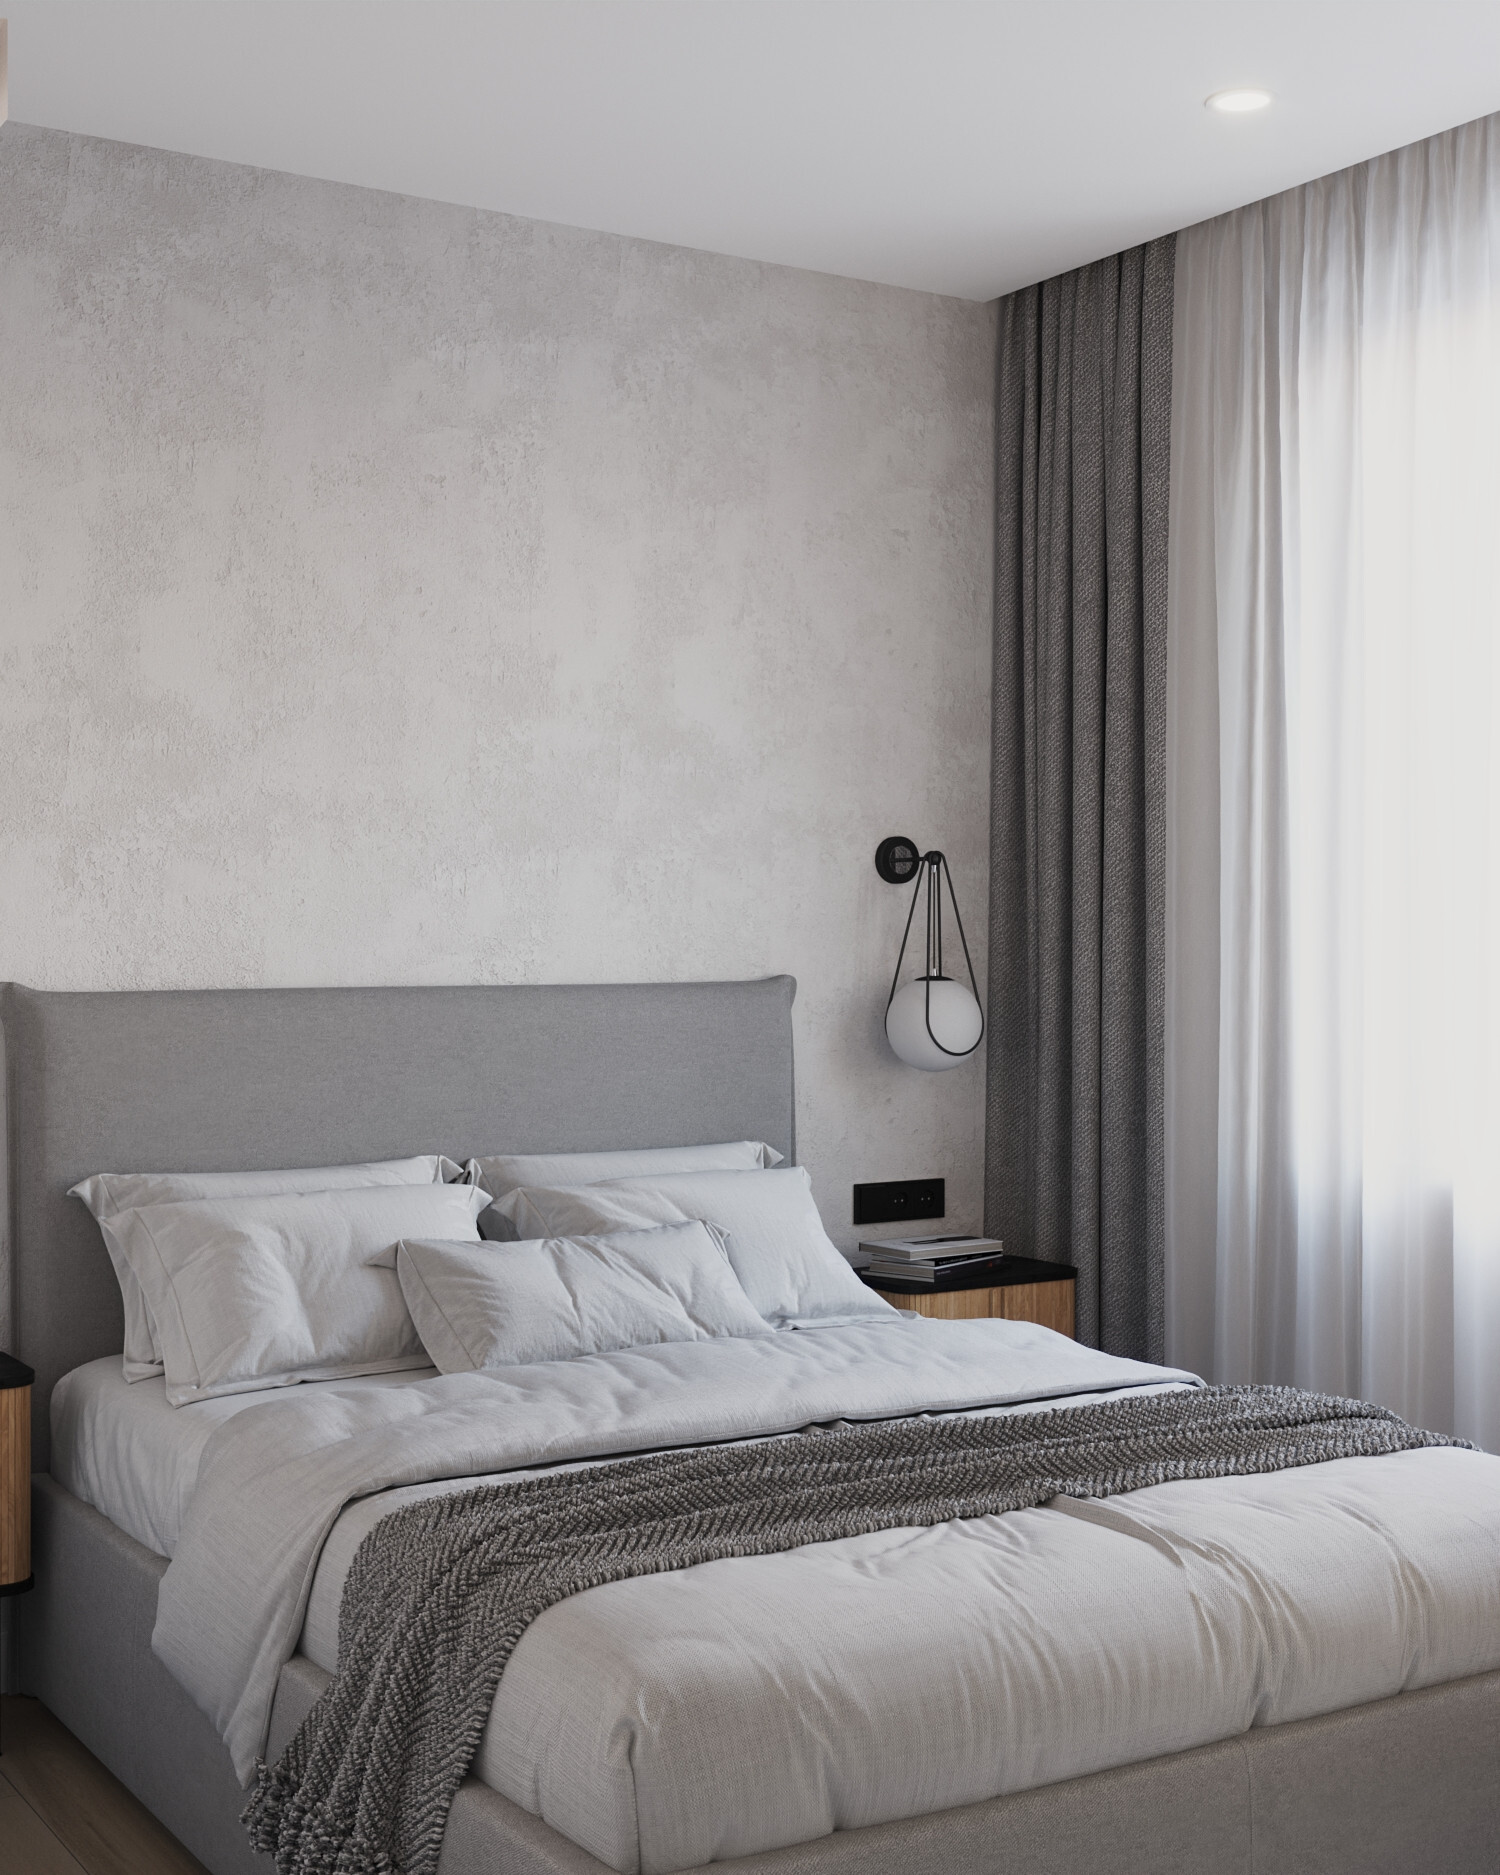 Интерьер спальни с бра над кроватью, подсветкой настенной и светильниками над кроватью в скандинавском стиле